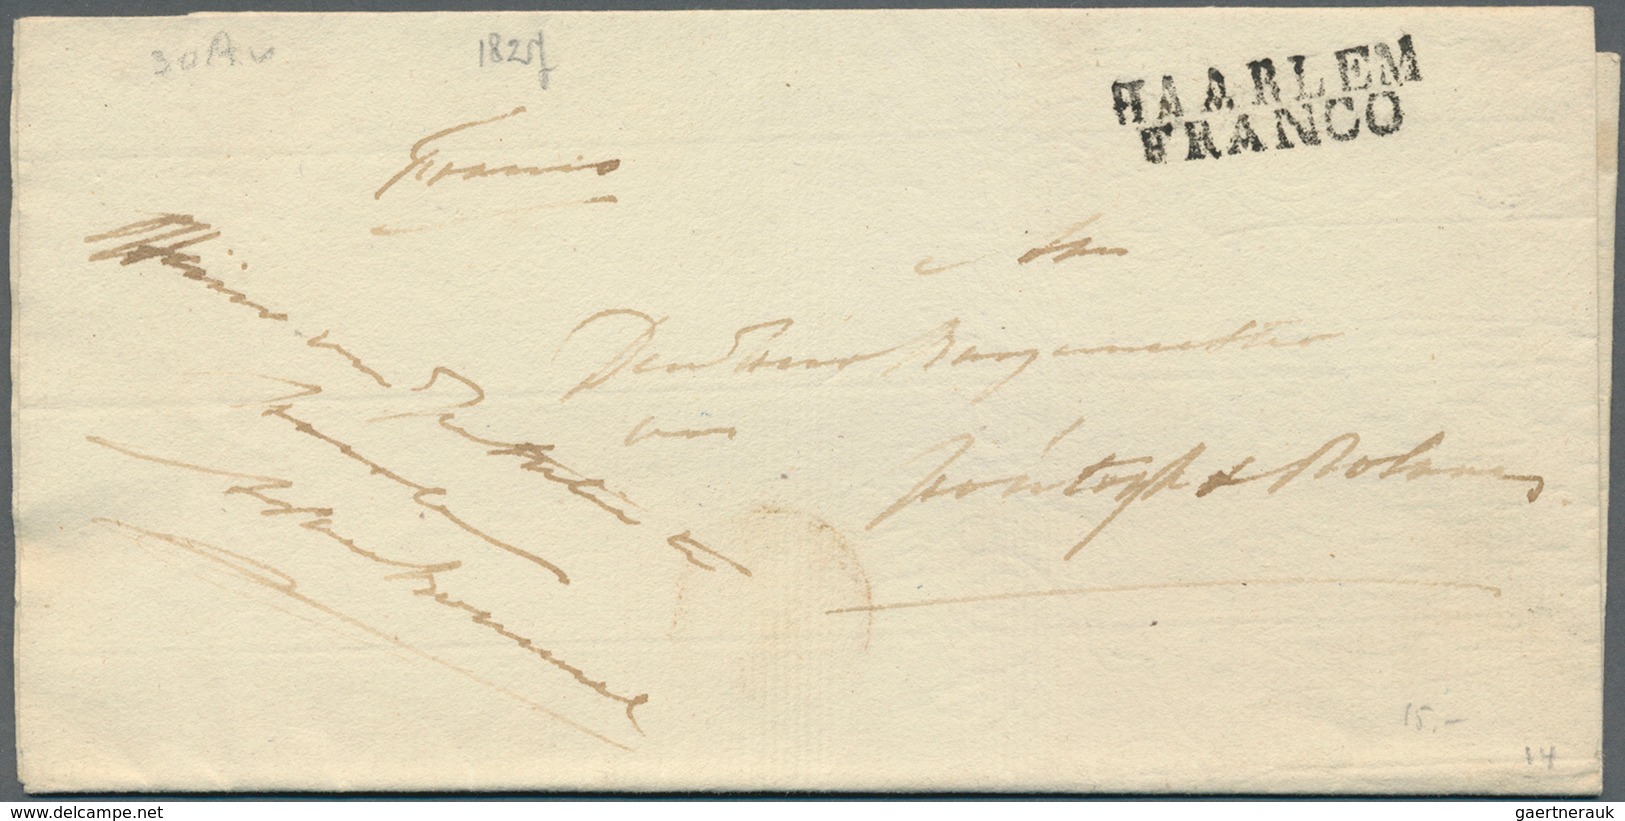 Niederlande - Vorphilatelie: 1800/1850 (ca.), Partie von ca. 110 Briefen mit verschiedensten "FRANCO